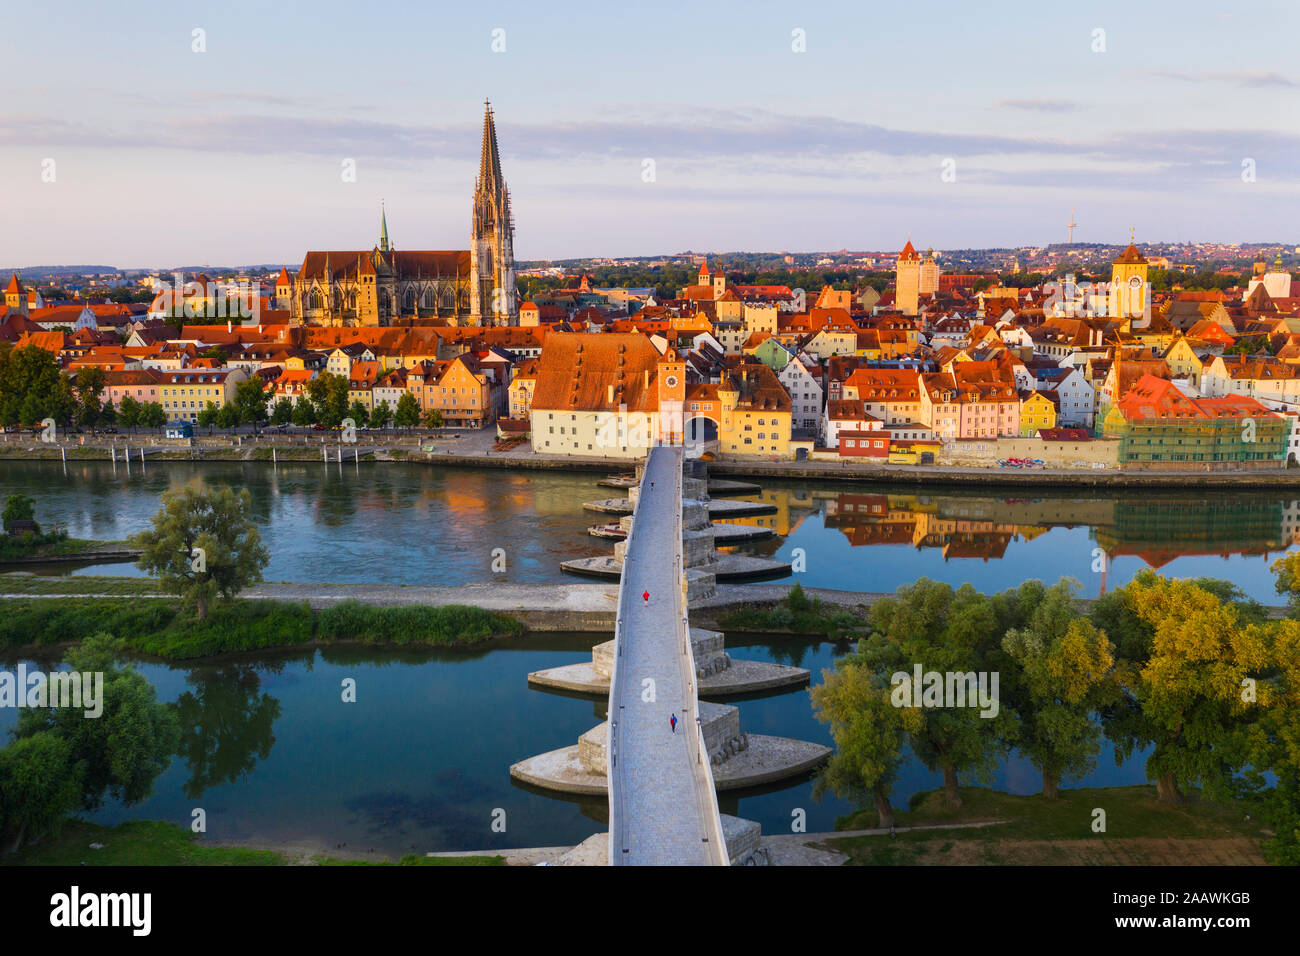 Vue aérienne du pont de pierre sur la rivière du Danube à Regensburg, Bavière, Allemagne Banque D'Images